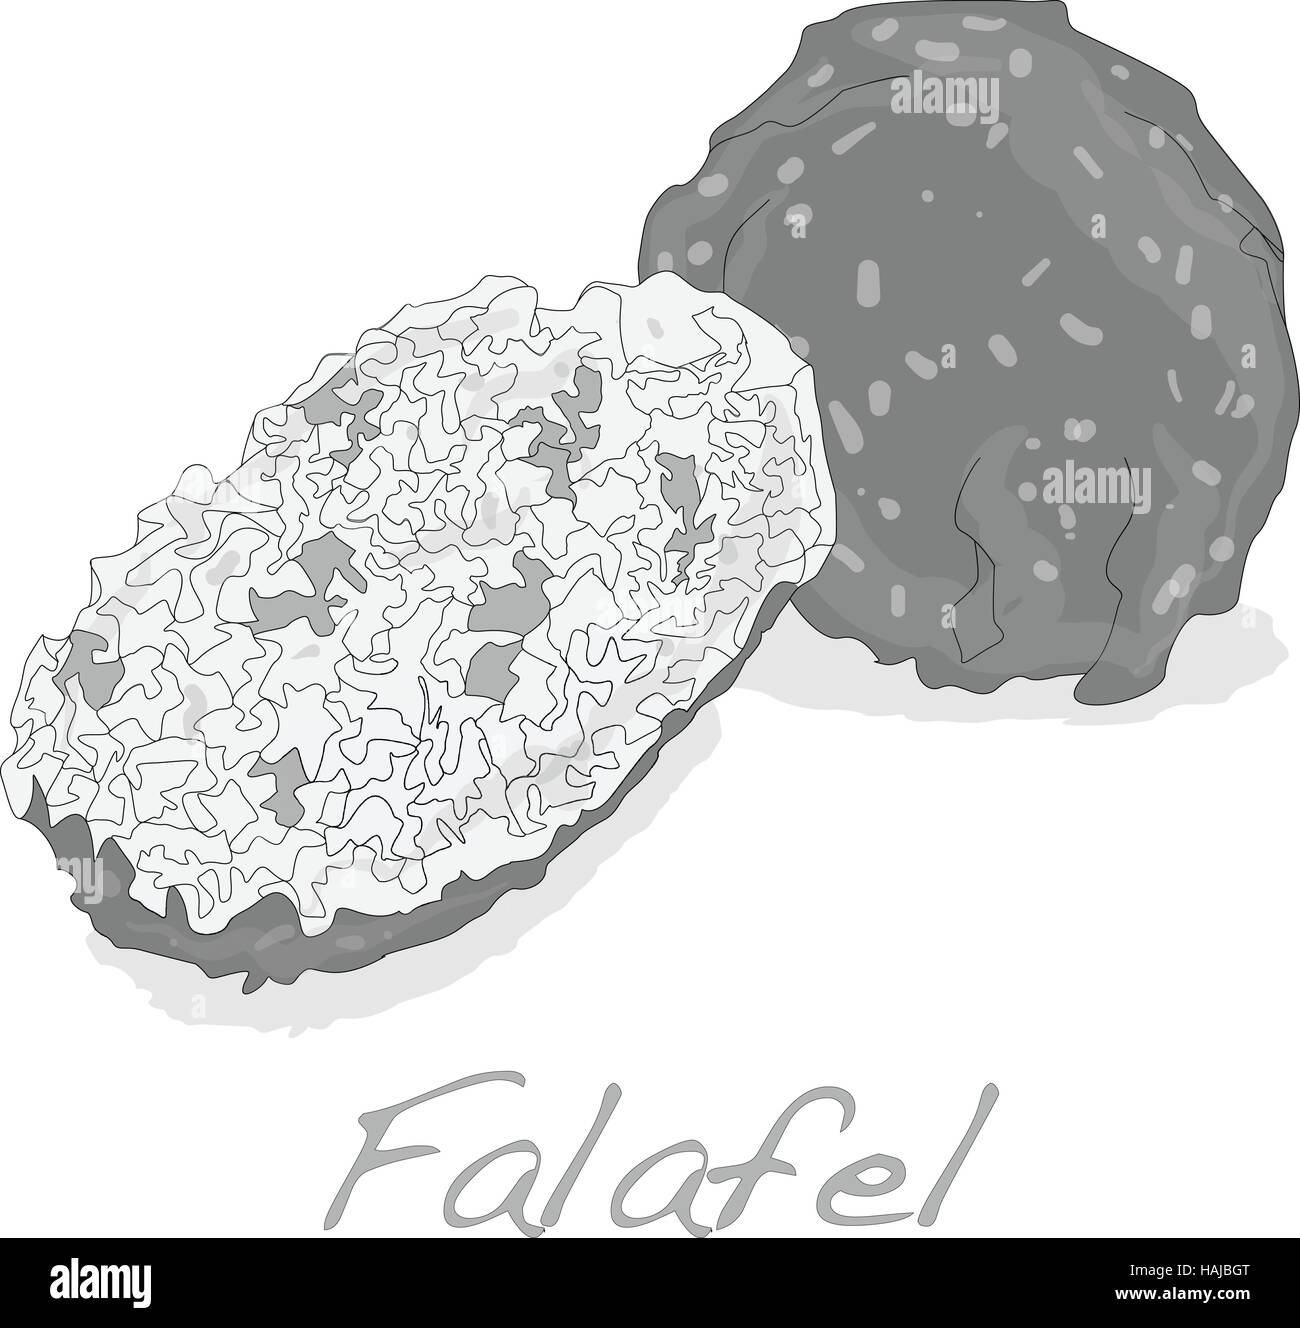 Boules de falafel vector isolé sur fond blanc Illustration de Vecteur